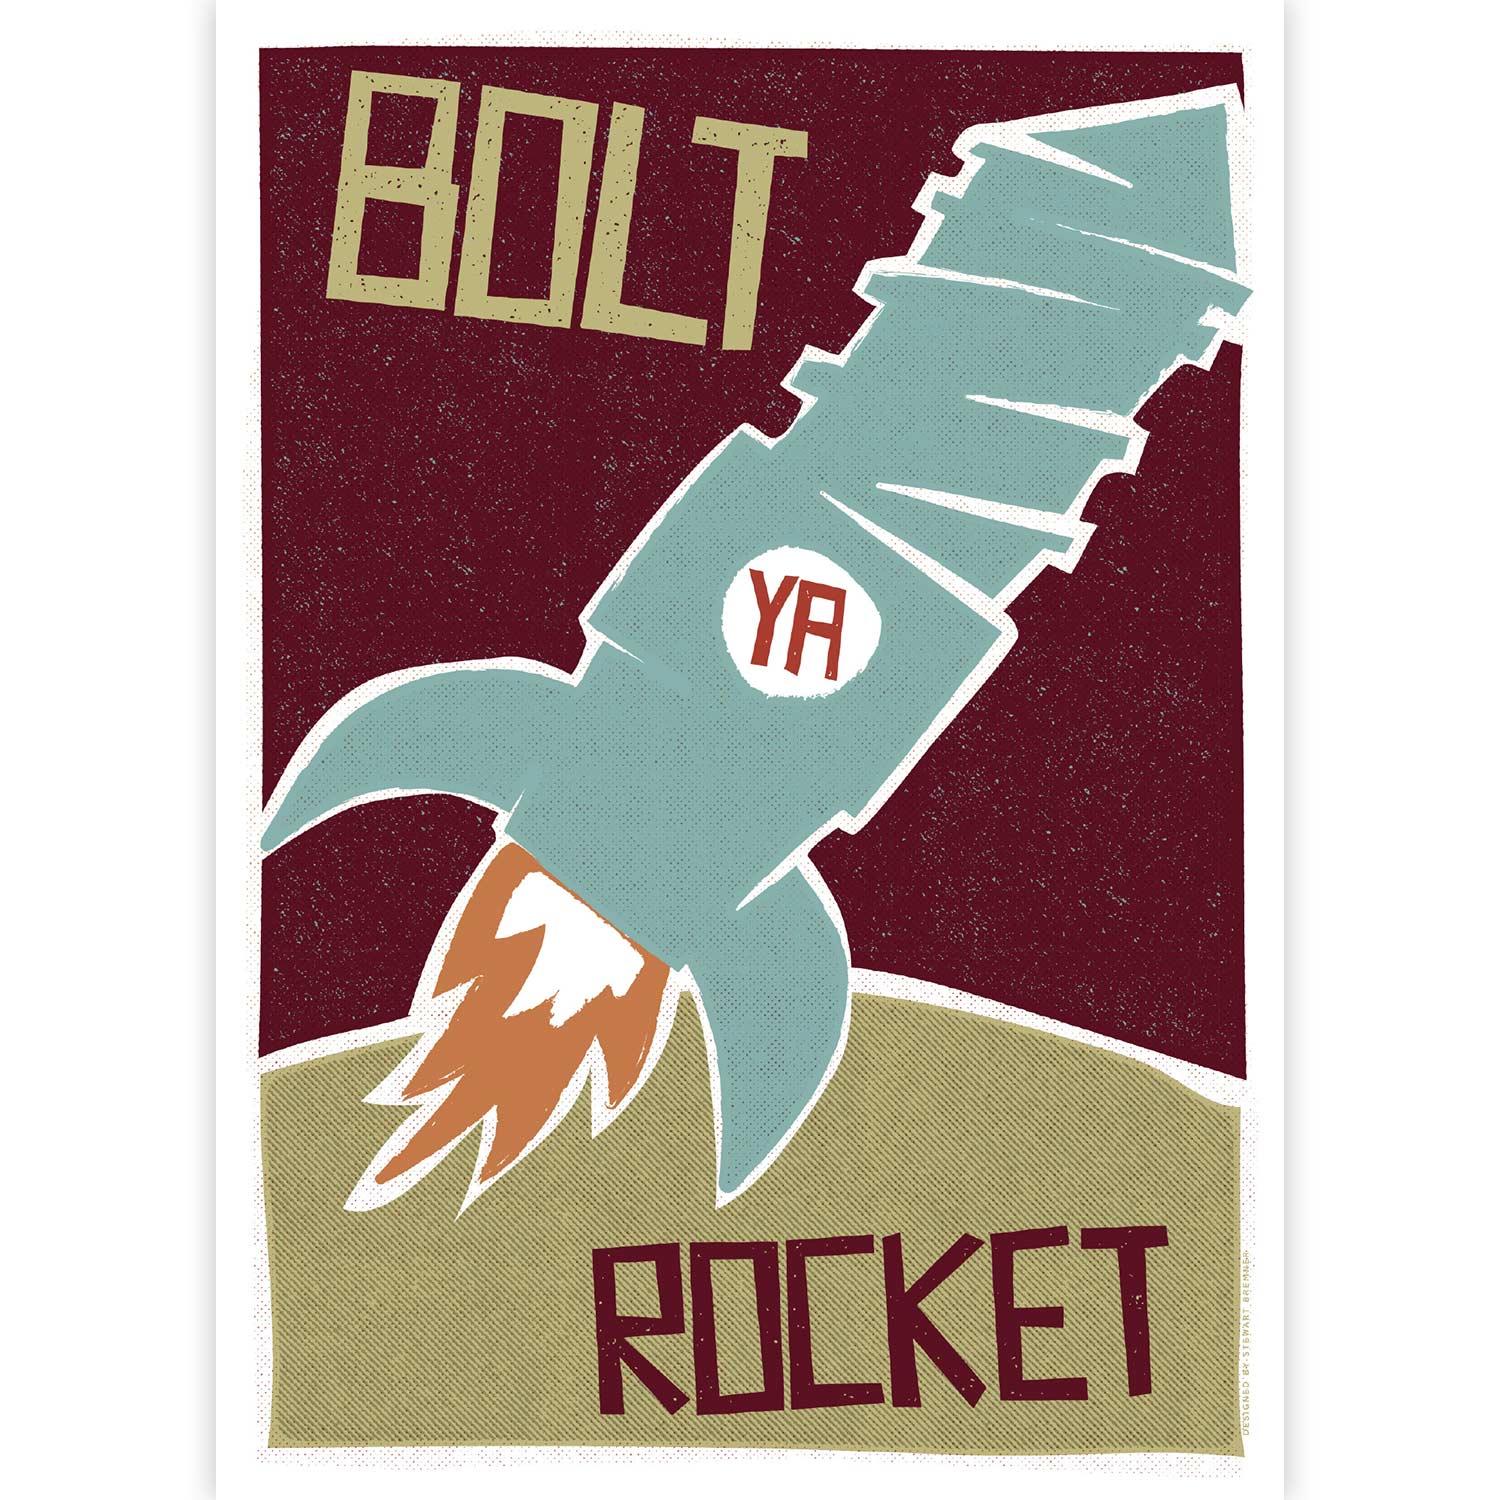 Bolt Ya Rocket by Stewart Bremner